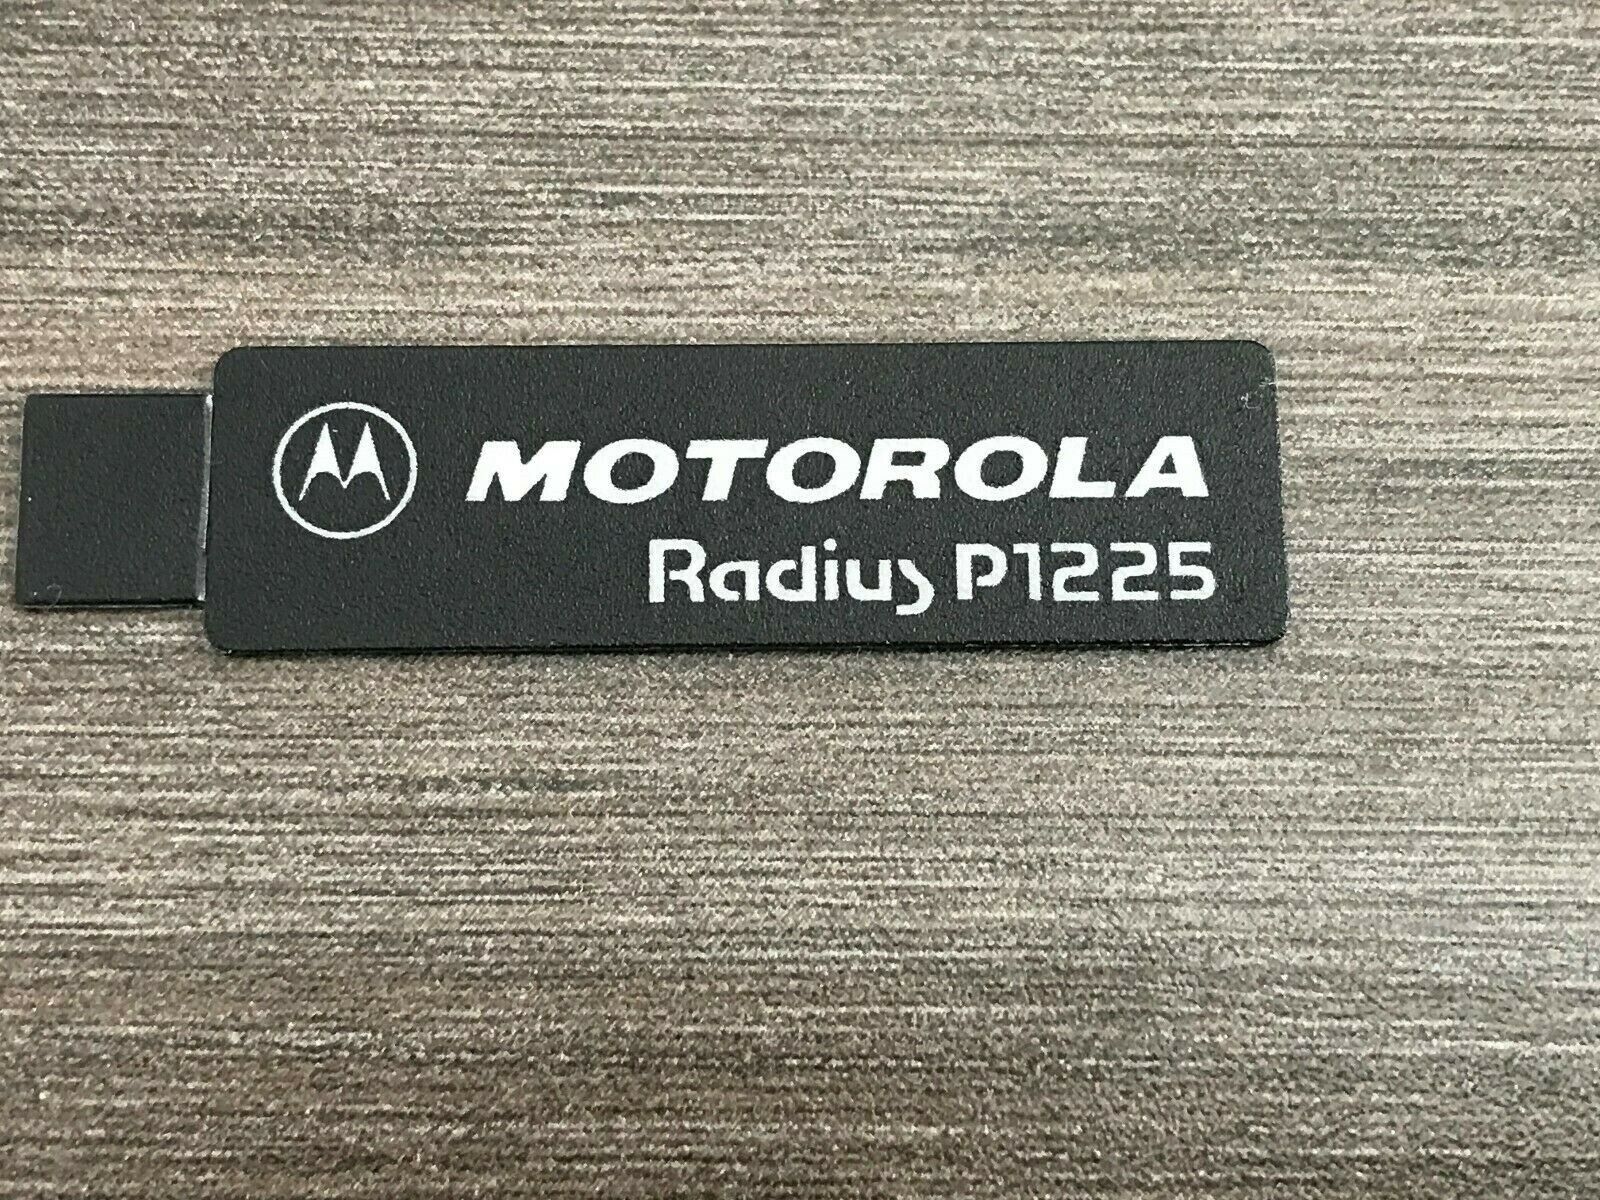 Motorola 1380670E01 Radius P1225 Name Plate NEW OEM